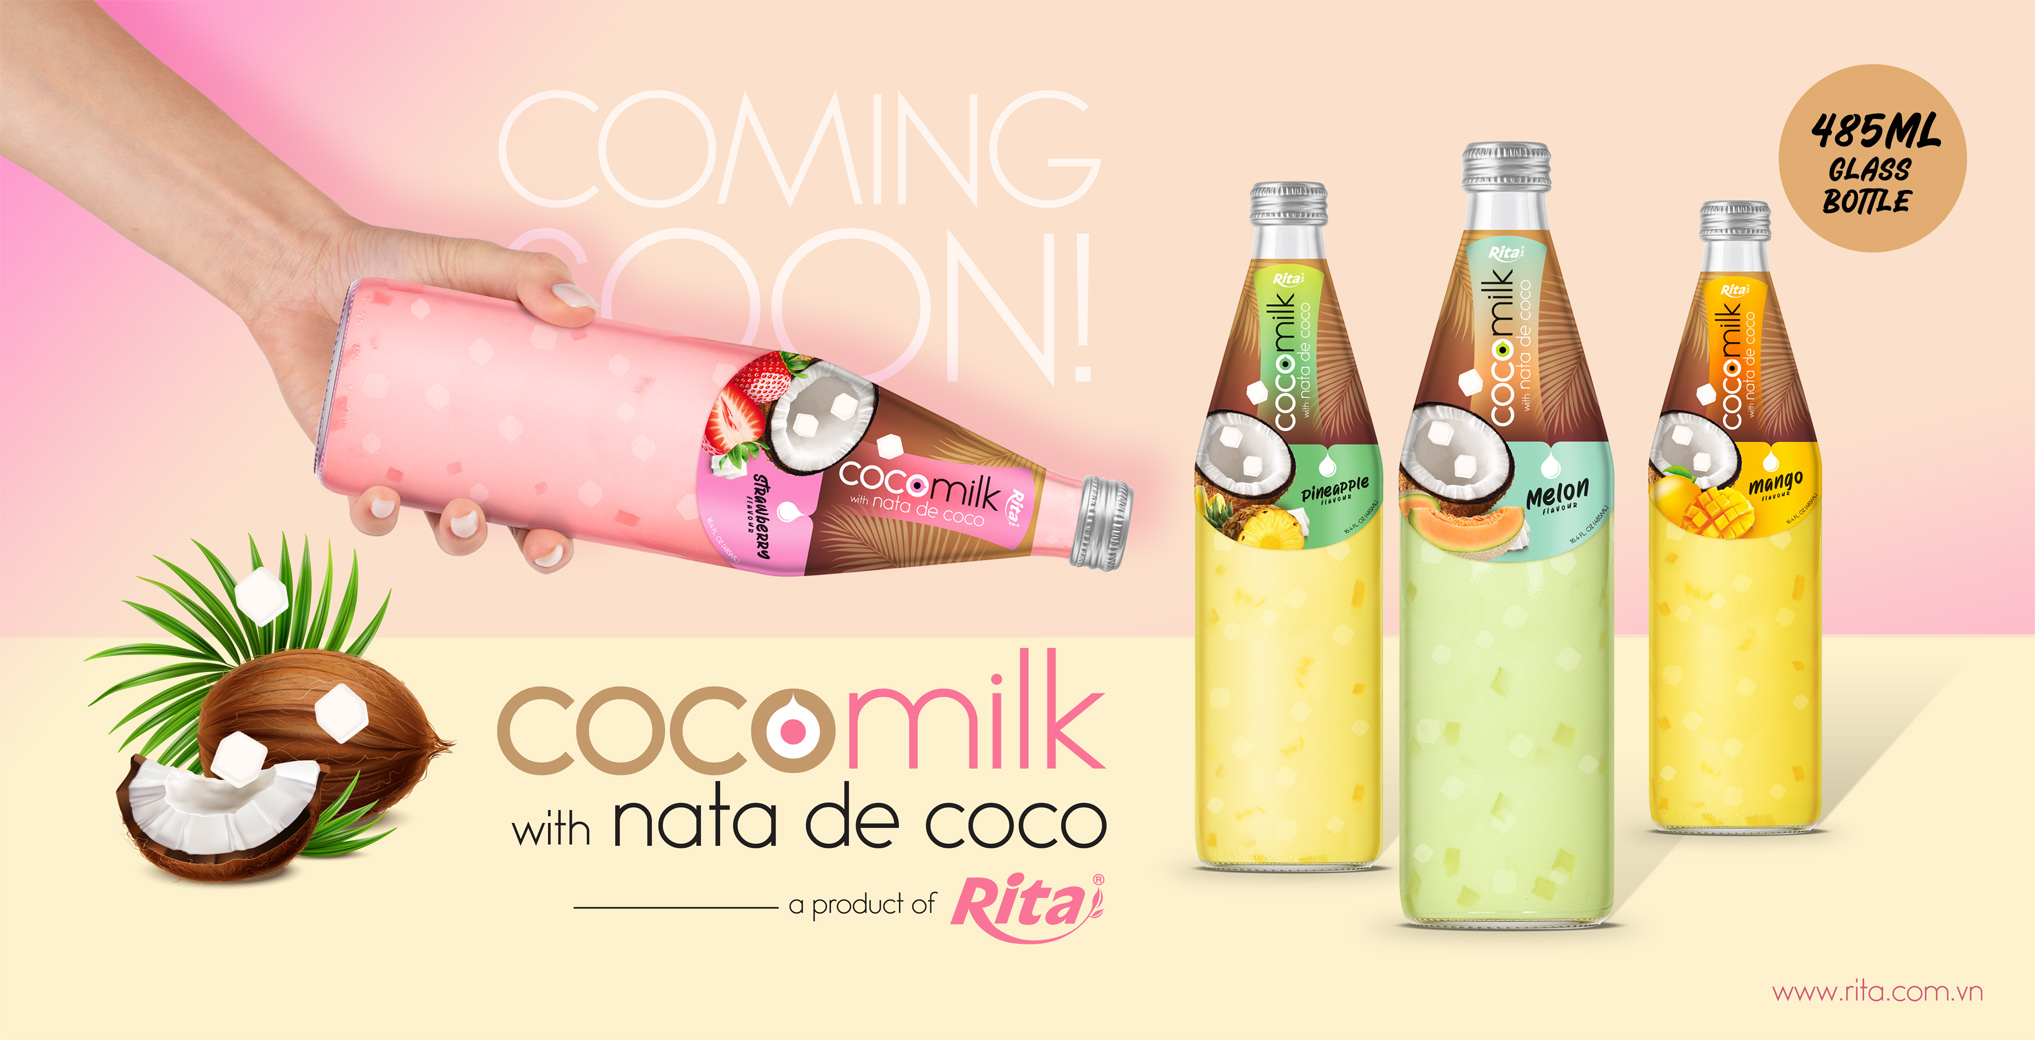 Design Coco Milk with nata de coco 485ml 4f